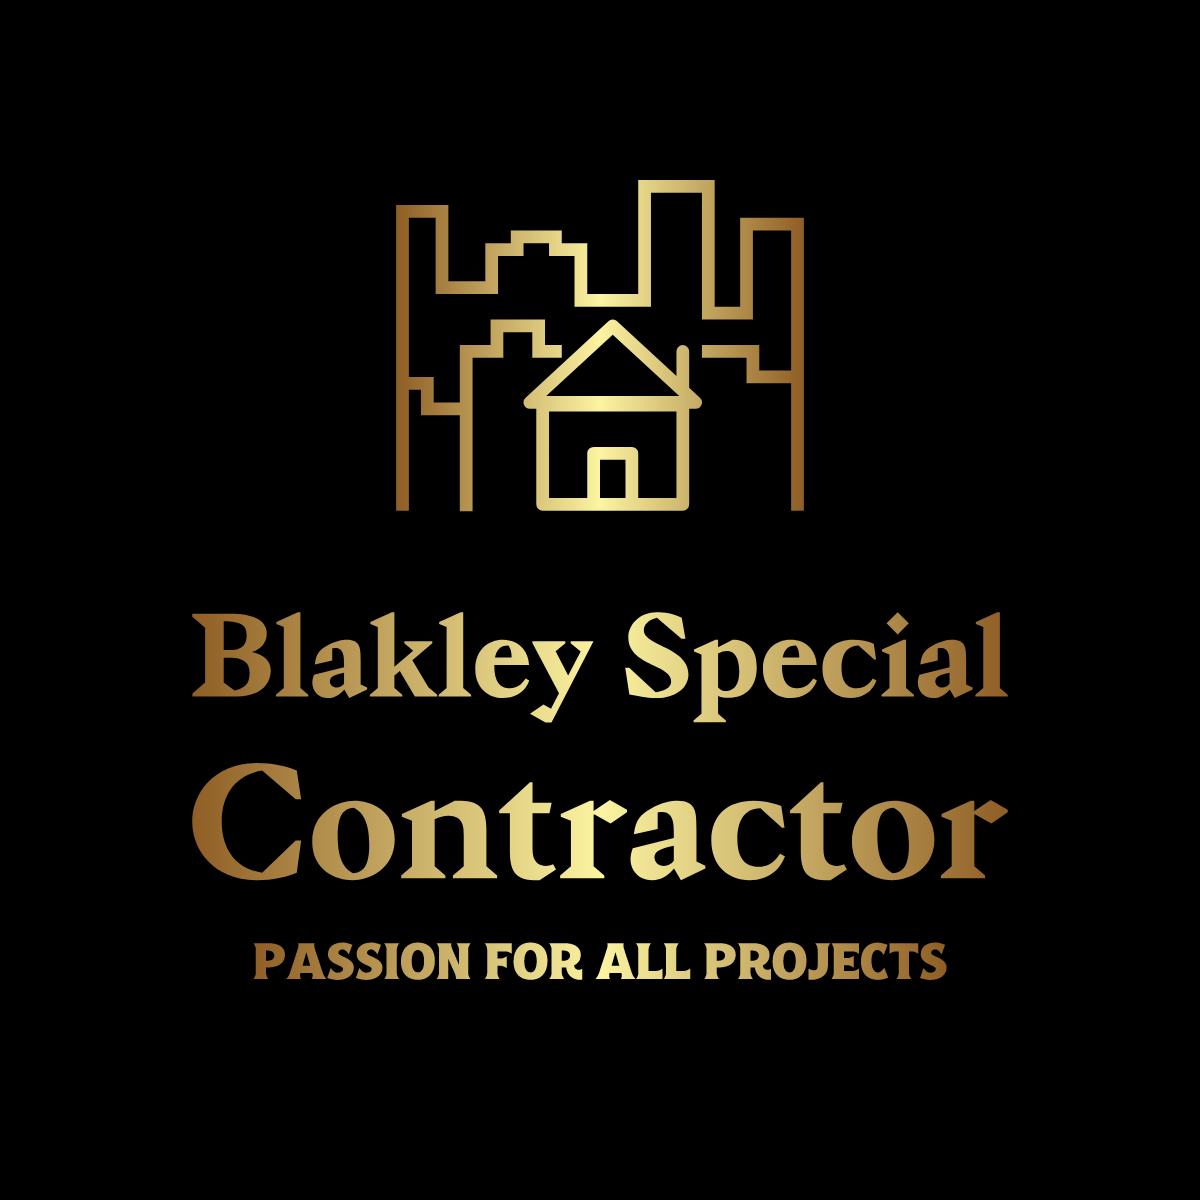 Blakley Special Contractor